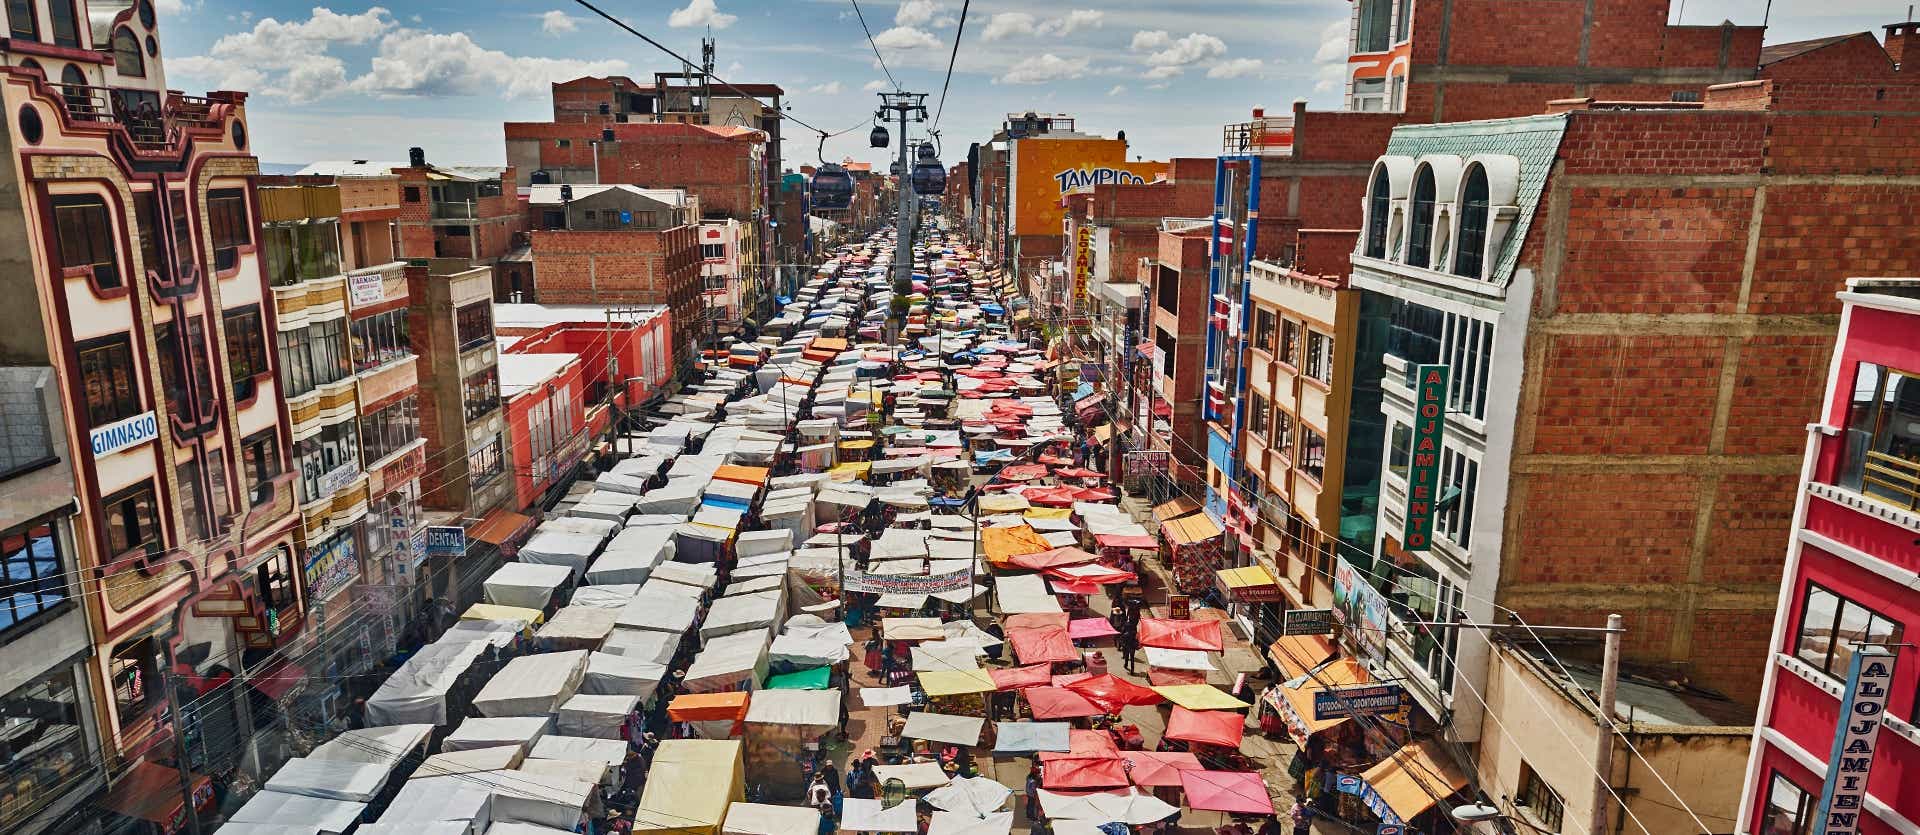 El Alto Street Market <span class="iconos separador"></span> La Paz